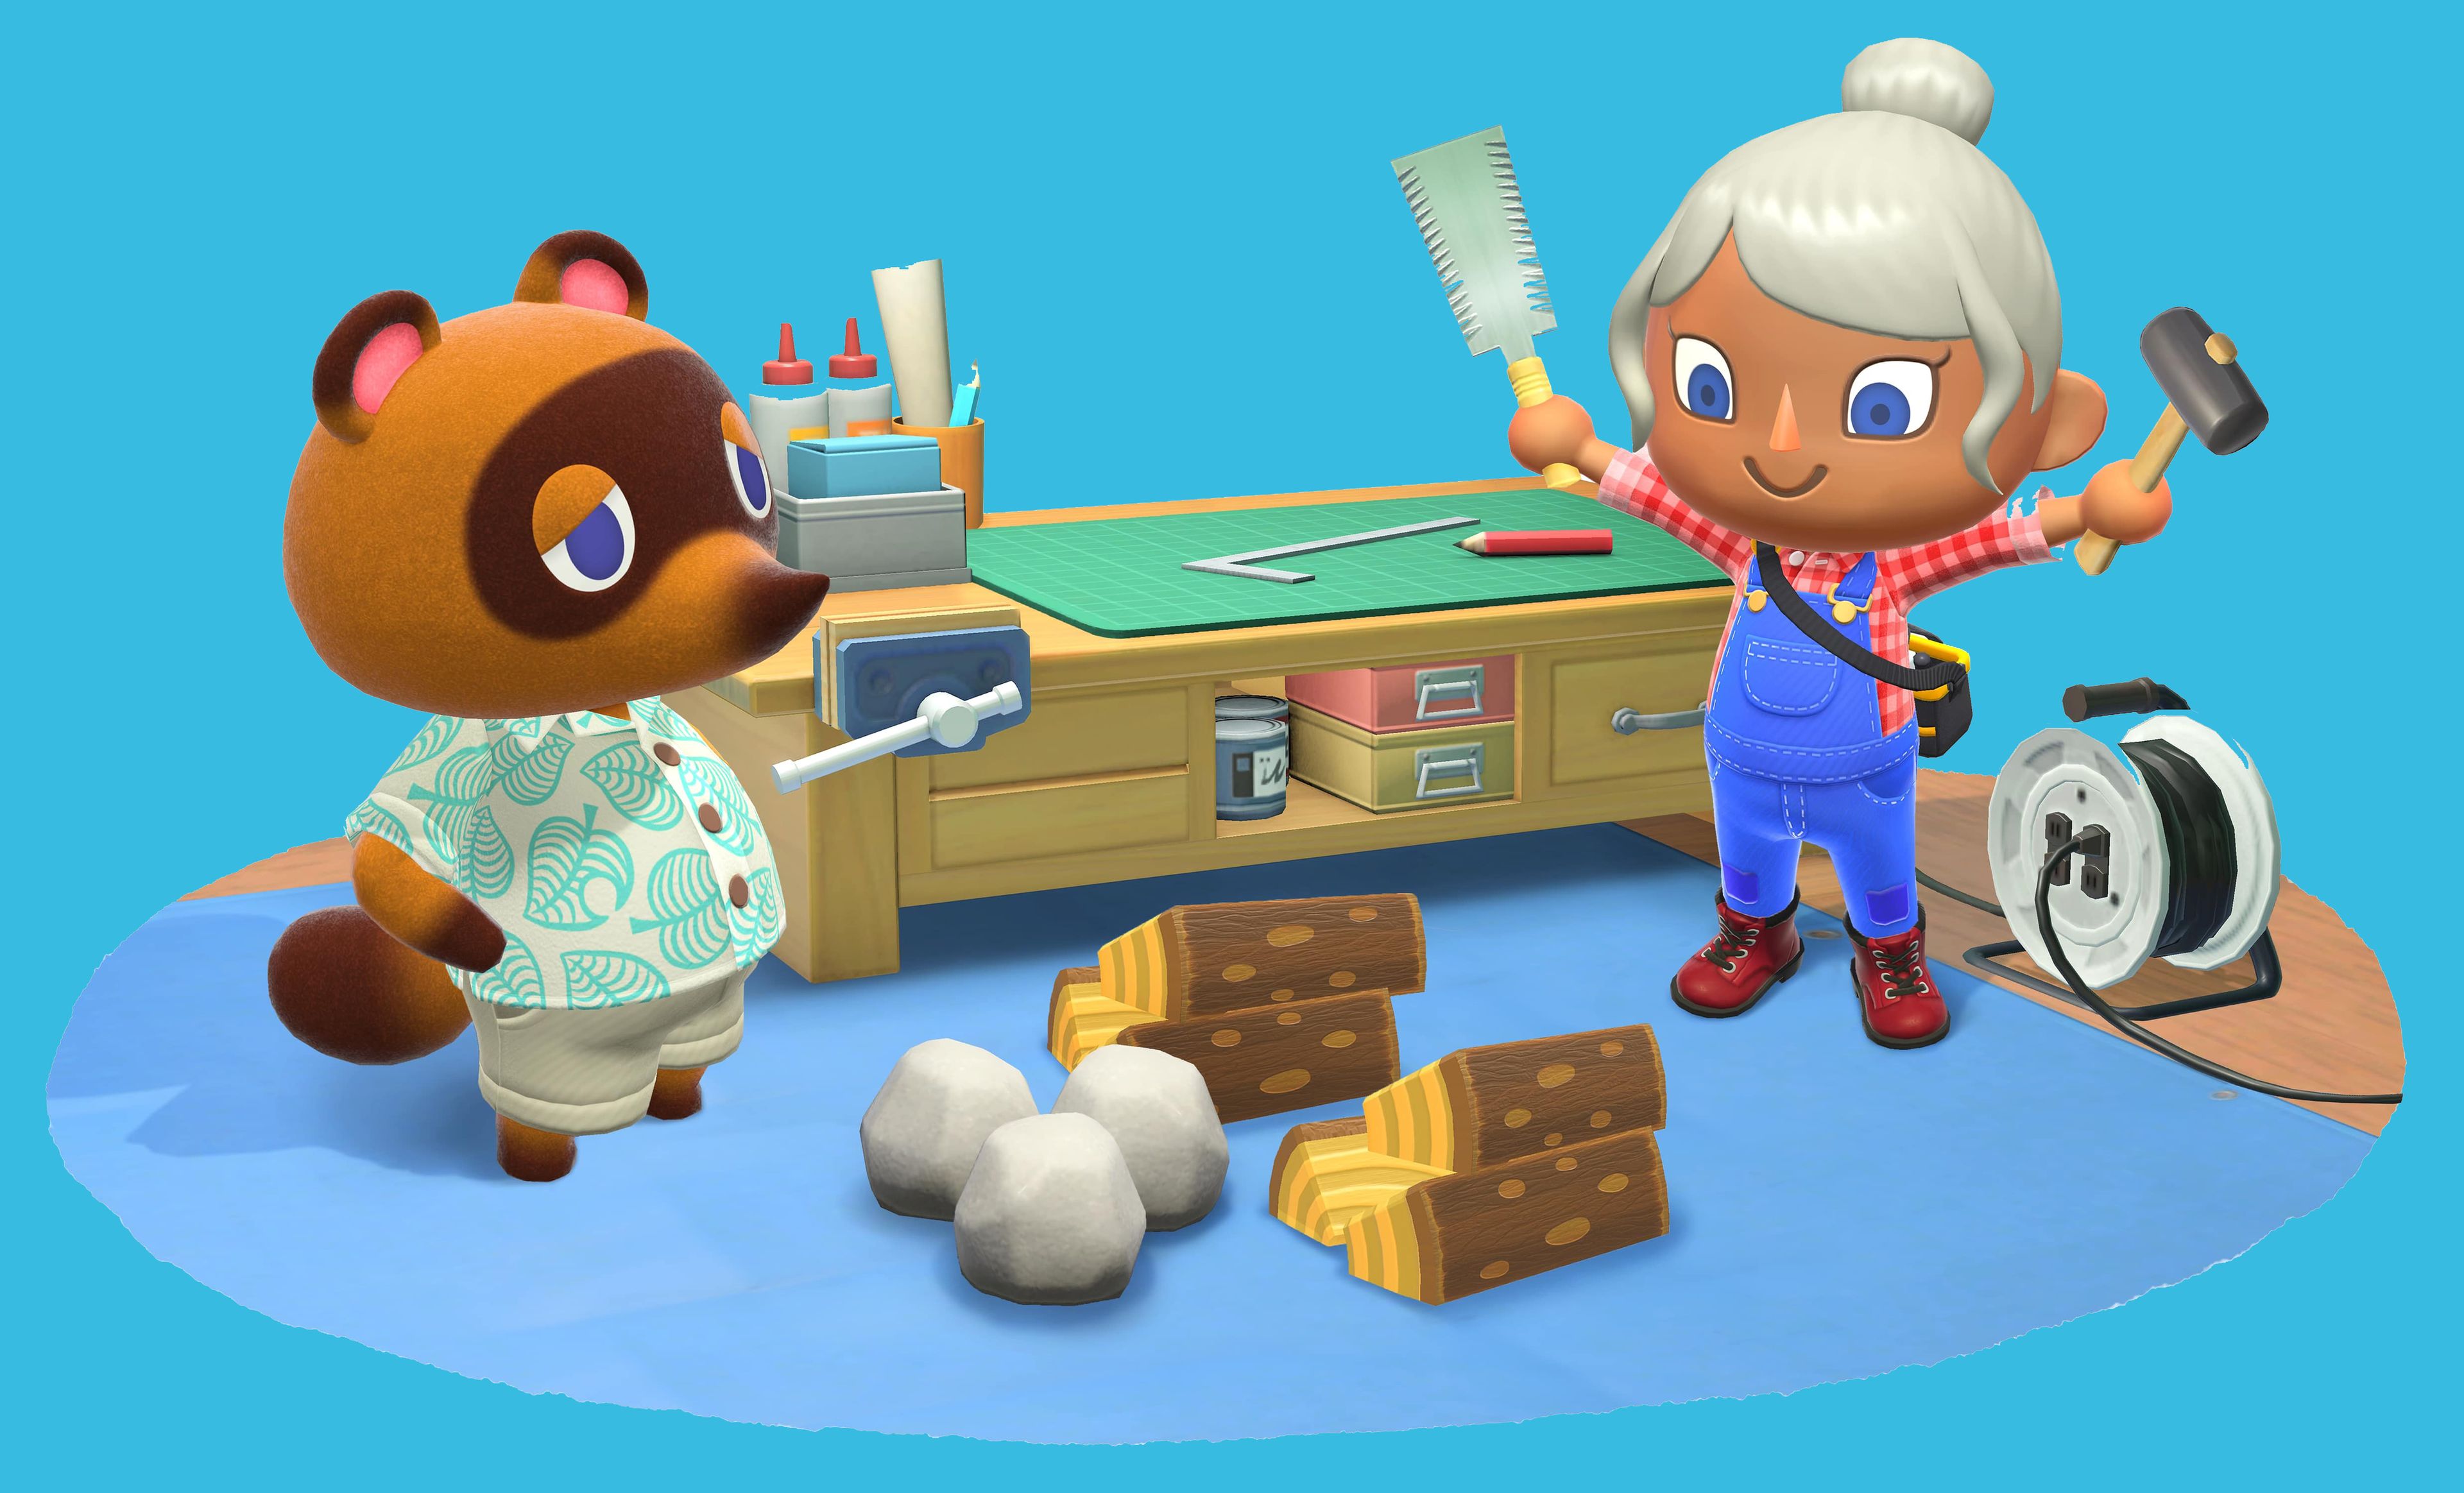 Animal Crossing: ¿Por qué todos lo están jugando?